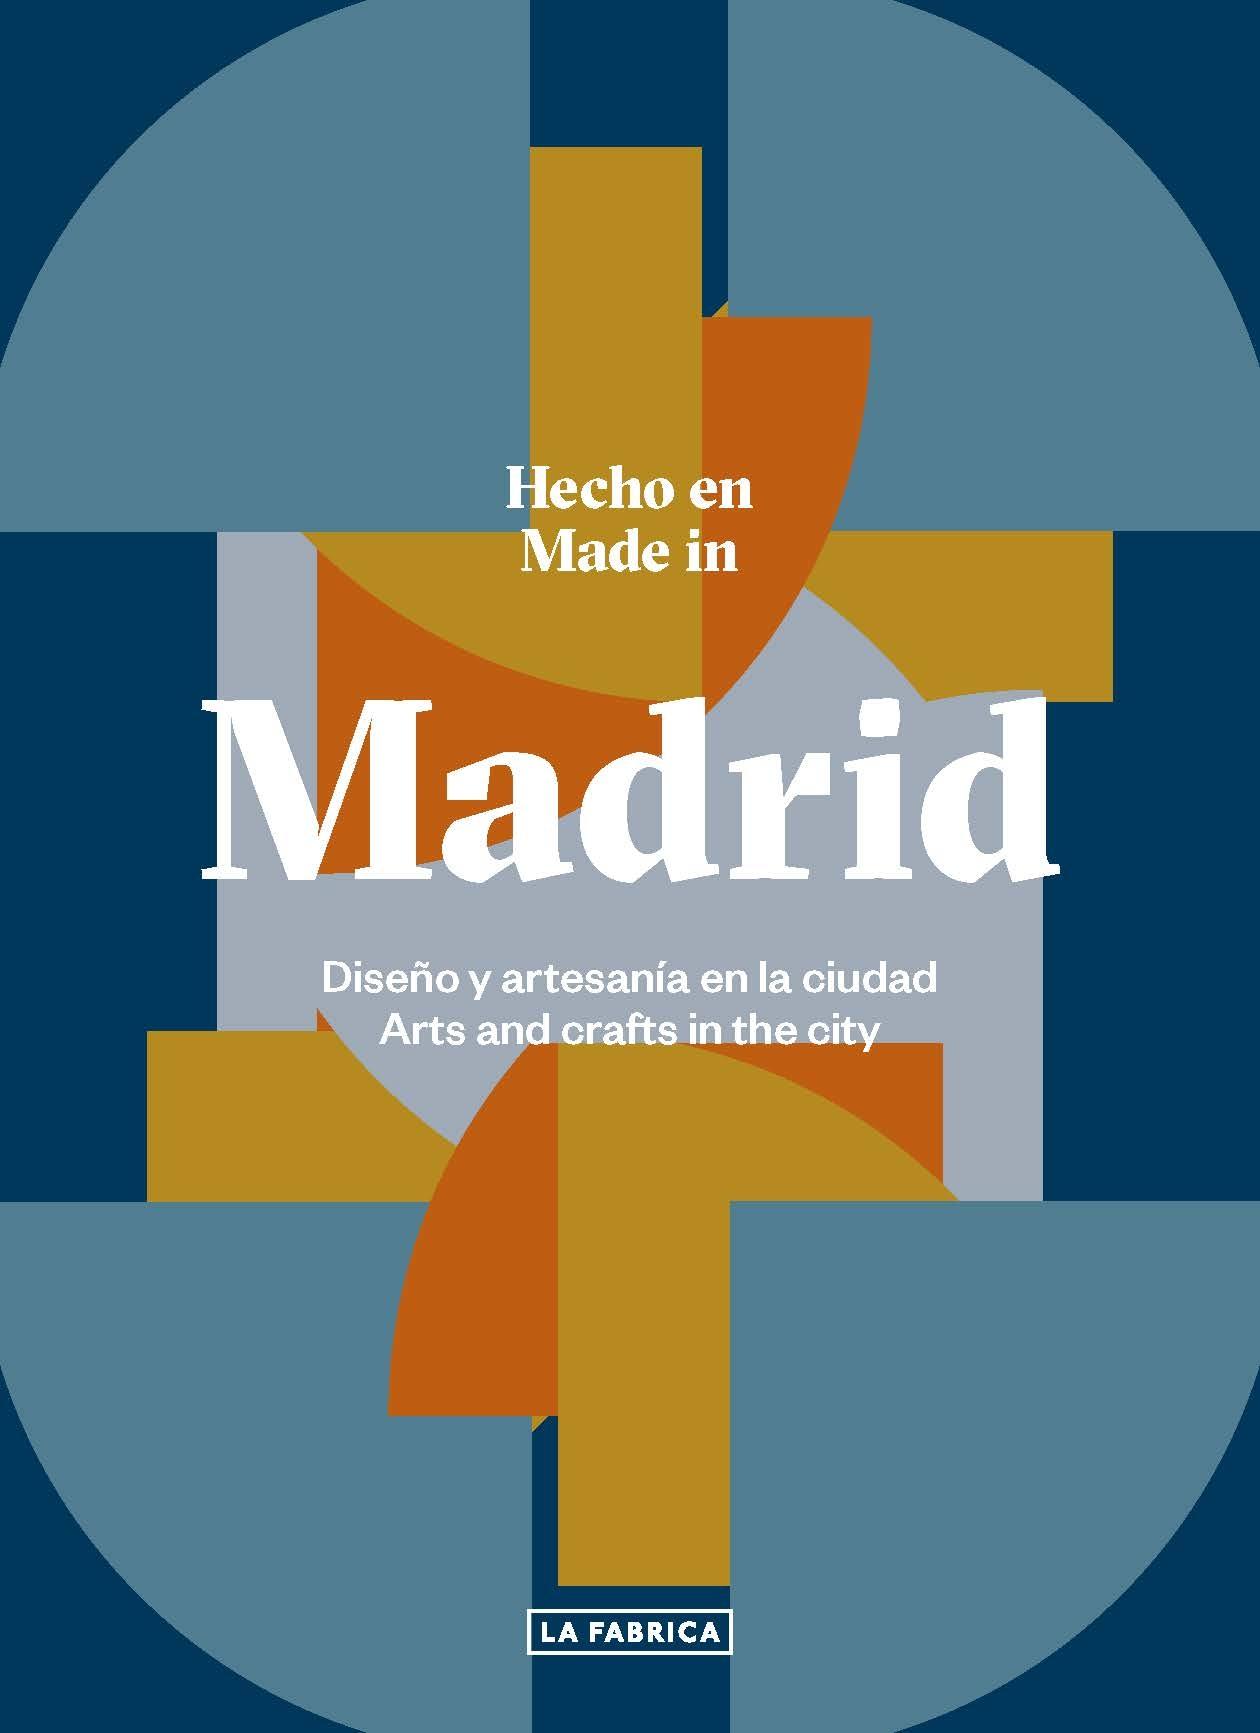 HECHO EN MADRID. "DISEÑO Y ARTESANÍA EN LA CIUDAD."